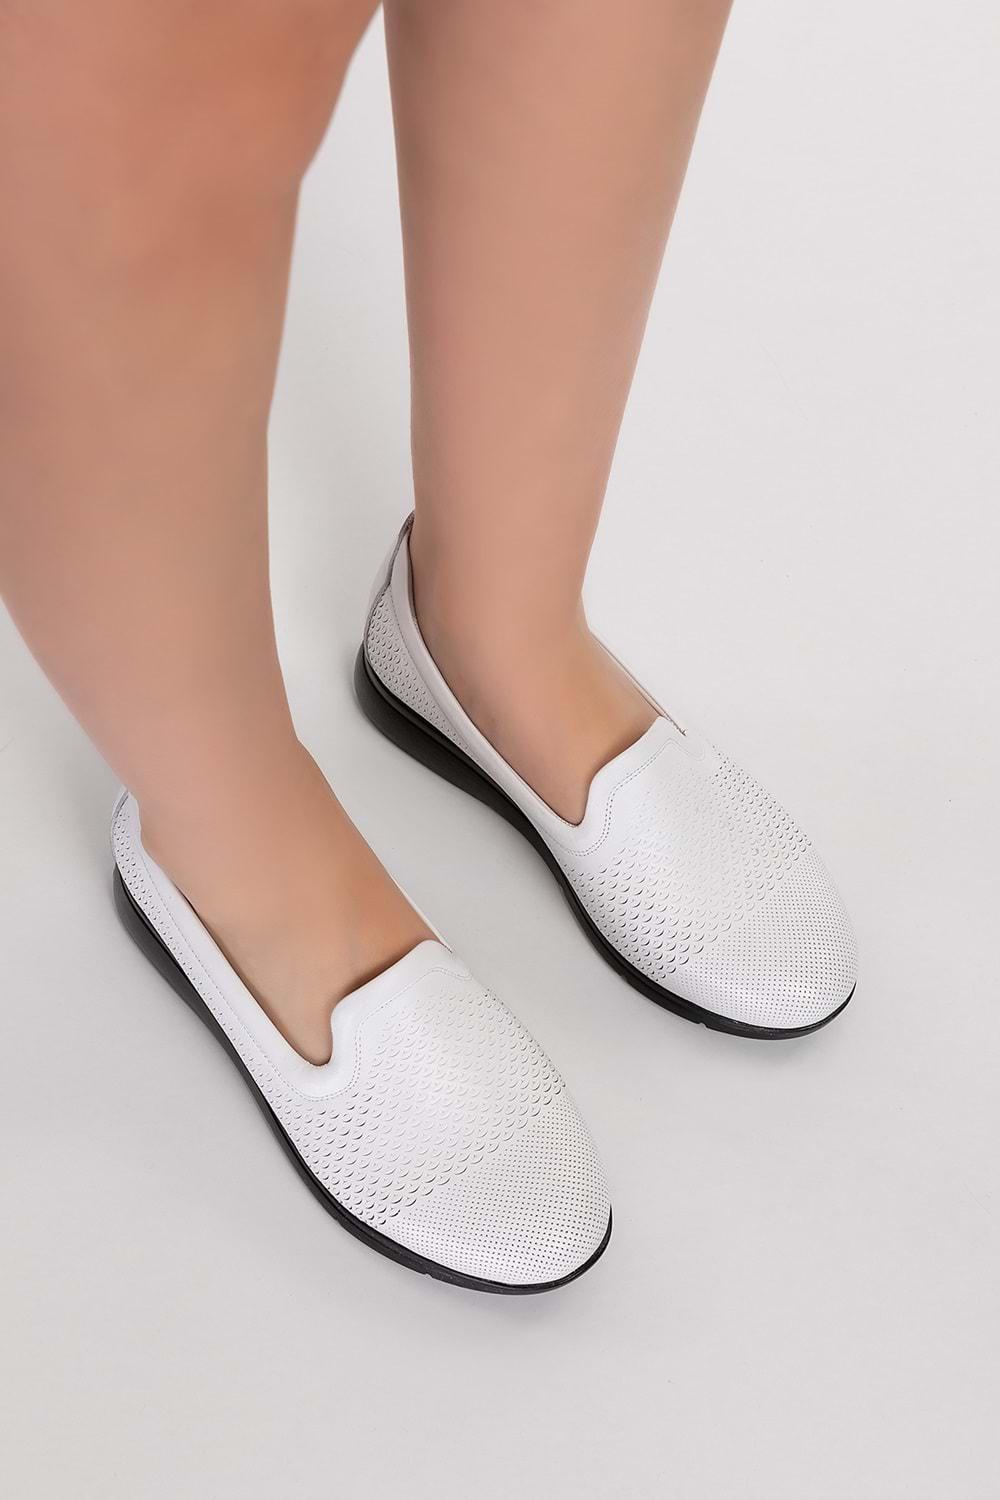 Gondol Kadın Hakiki Deri Klasik Günlük Ayakkabı vdt.911 - Beyaz - 36